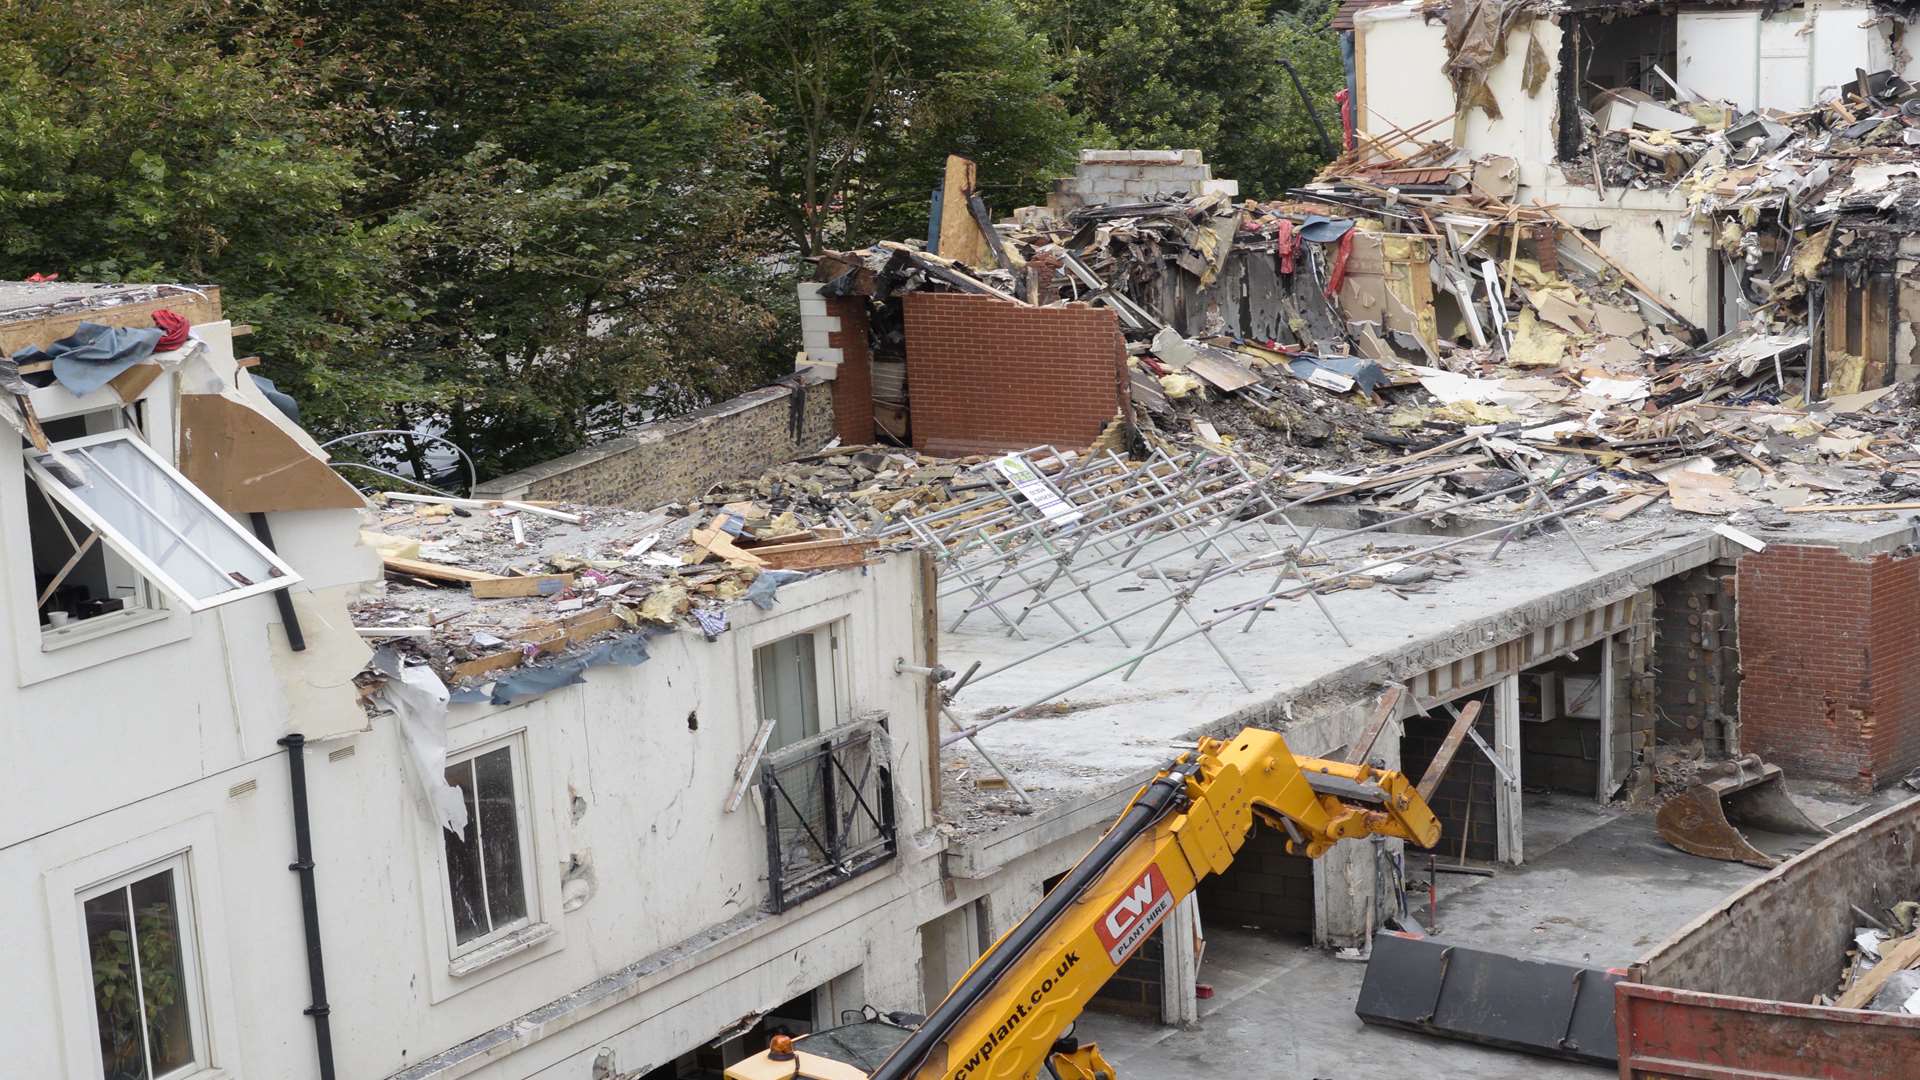 Demolition continues